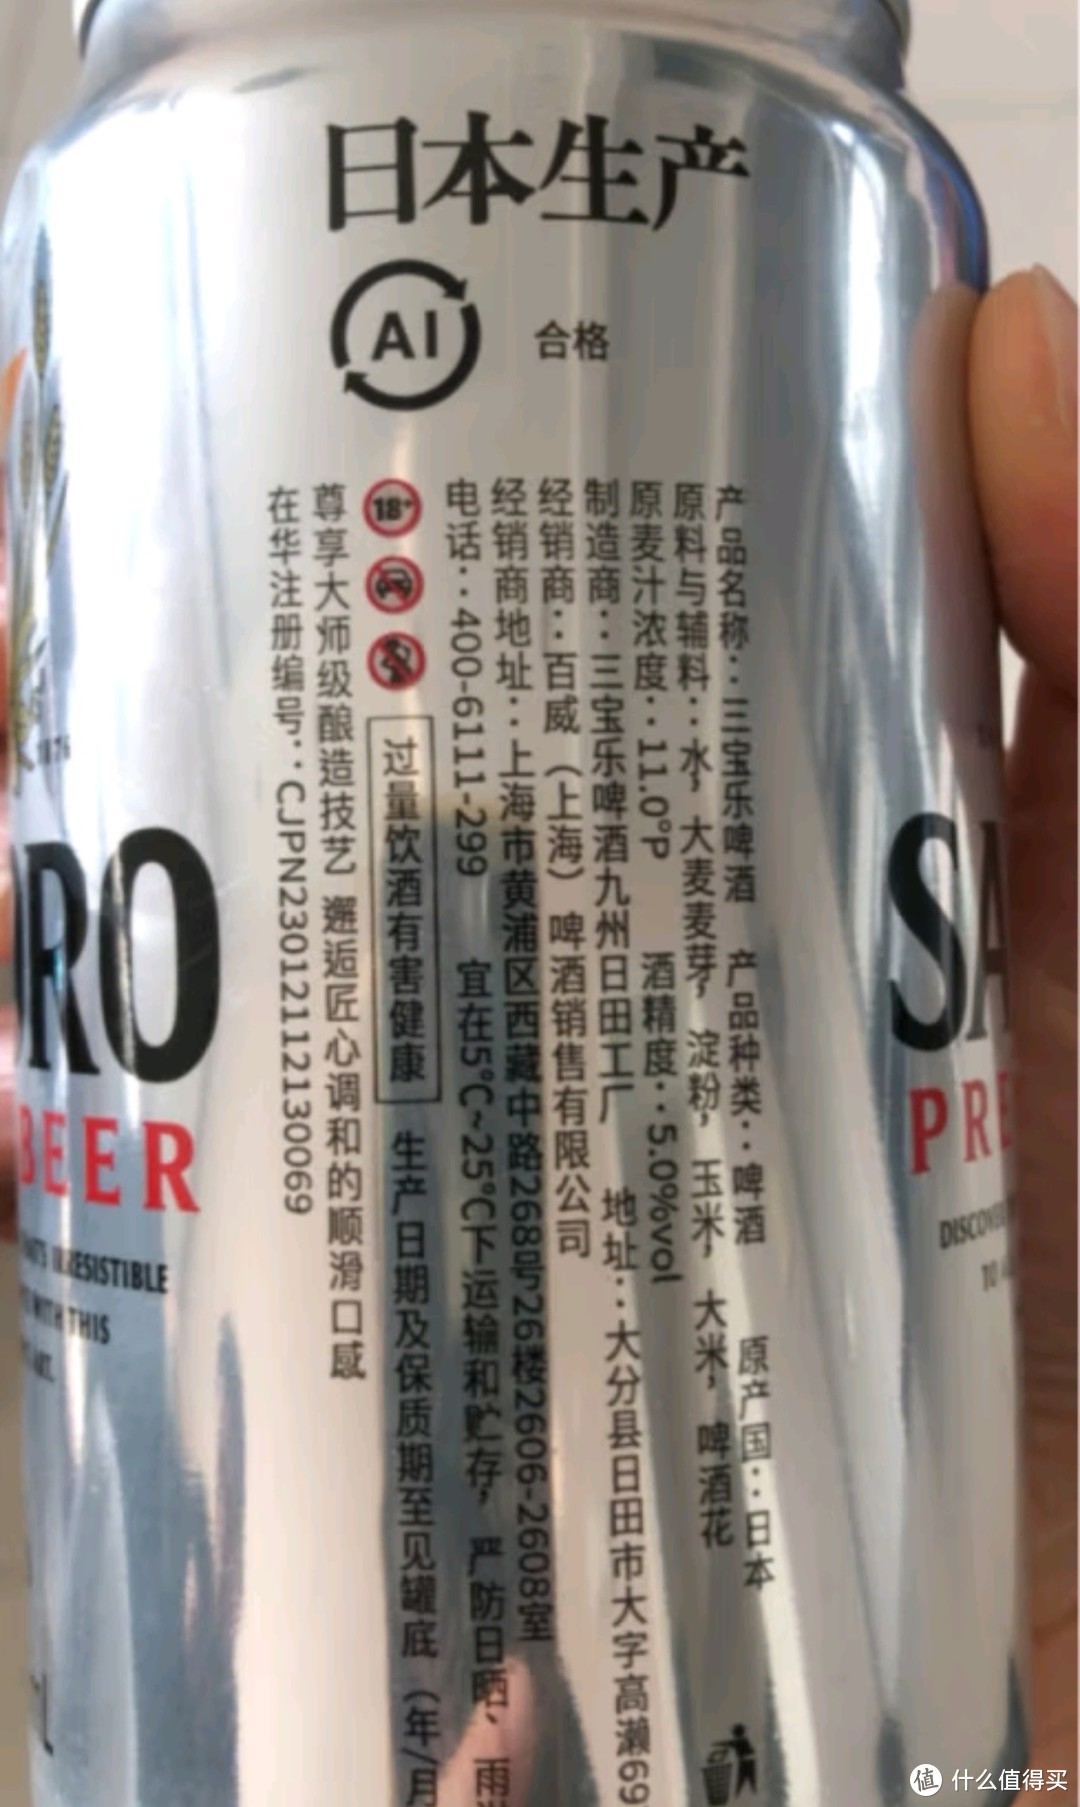 三宝乐（Sapporo）百威集团 精酿啤酒 进口原装  350ml*24听 啤酒整箱装